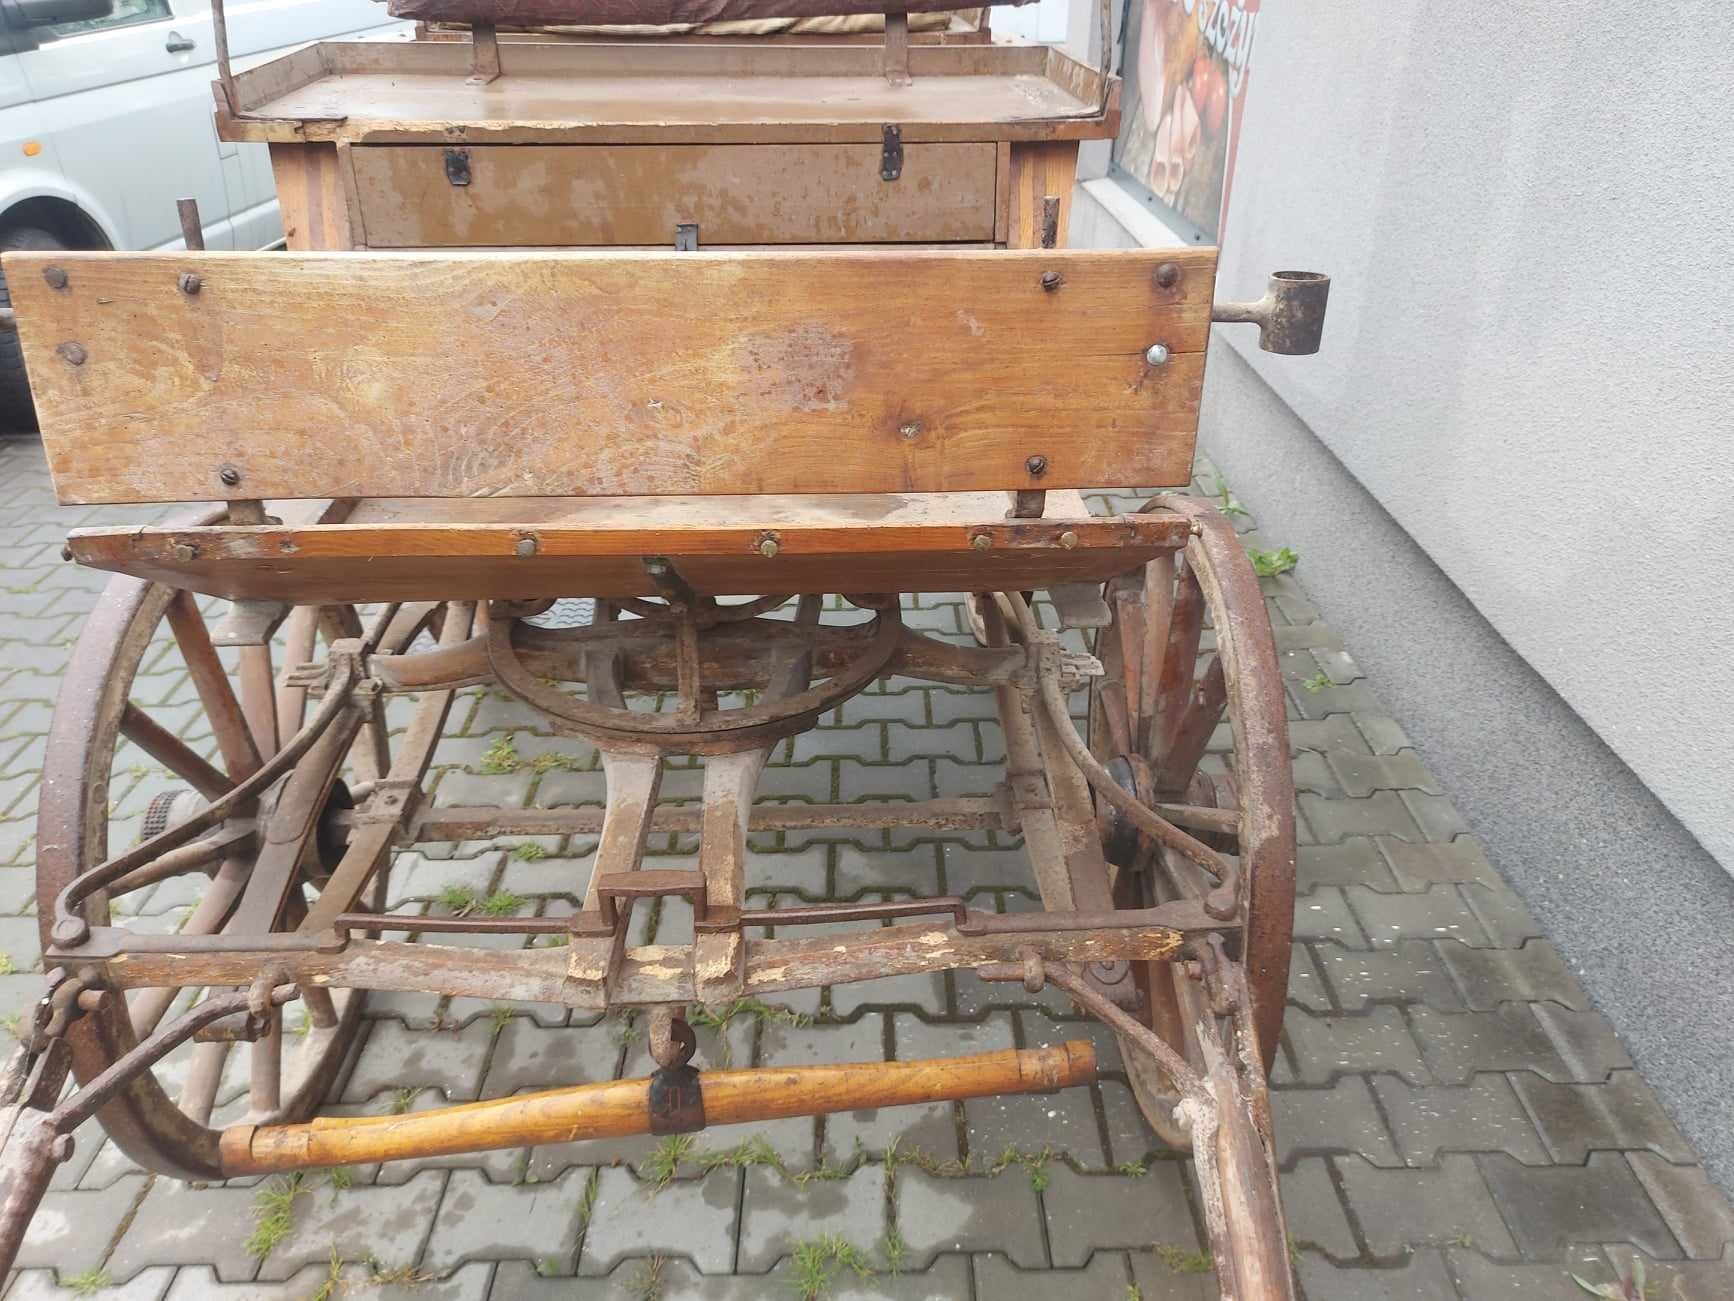 Bryczka wóz drewniany konny zabytkowy